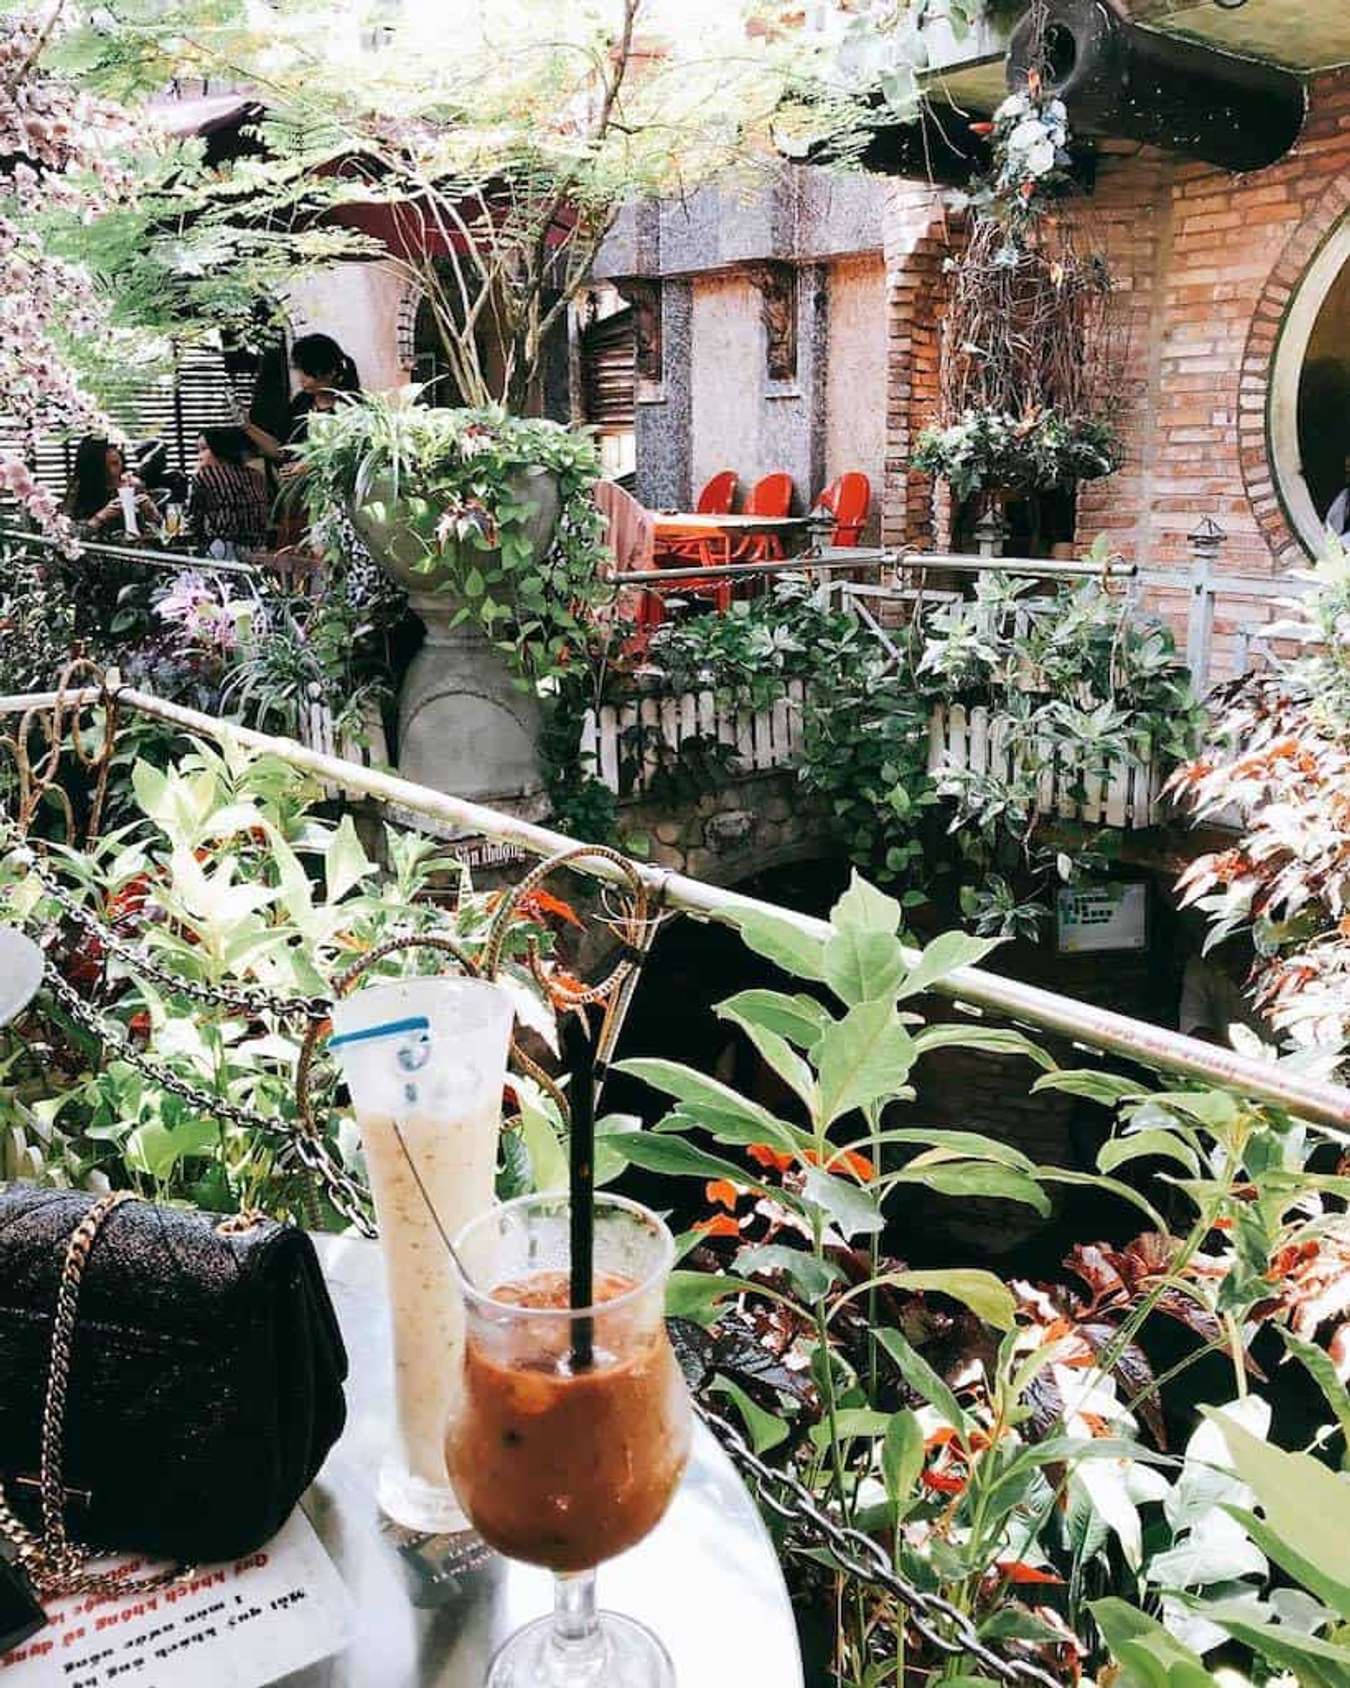 Từ bộn bề cuộc sống đô thị, hãy tìm về quán cafe sân vườn giữa Sài Gòn. Nơi đây, cảm giác sâu lắng trong tâm hồn được giải tỏa nhờ bầu không khí trong lành và xanh mát. Vẫy tạm biệt những đám đông, đến đây đắm mình vào vườn hoa, uống cà phê và thư giãn.